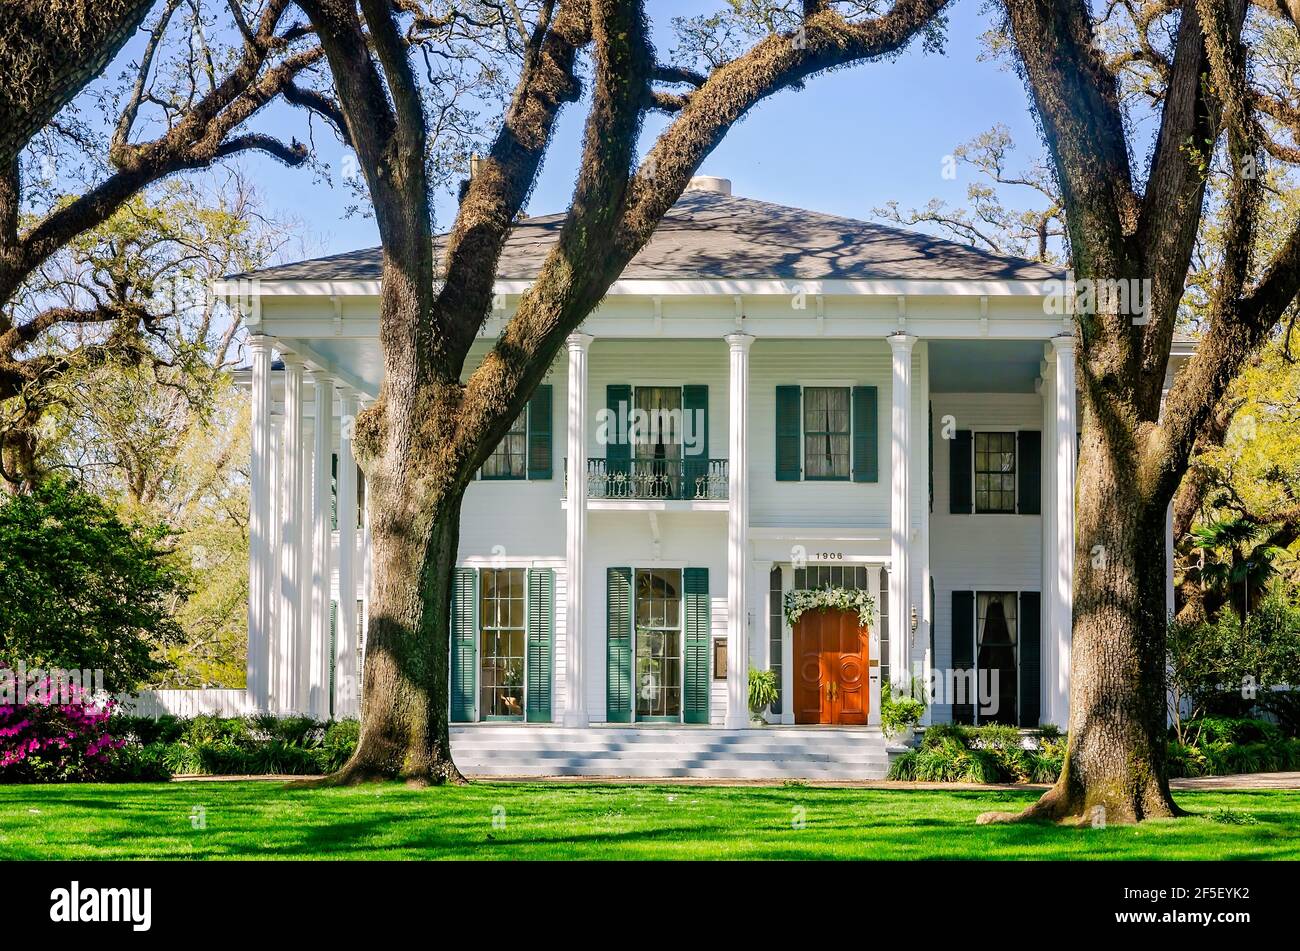 Le manoir Bragg-Mitchell est photographié, le 21 mars 2021, à Mobile, Alabama. Le Revival grec de 1855 est une attraction touristique populaire à Mobile, Alabama. Banque D'Images